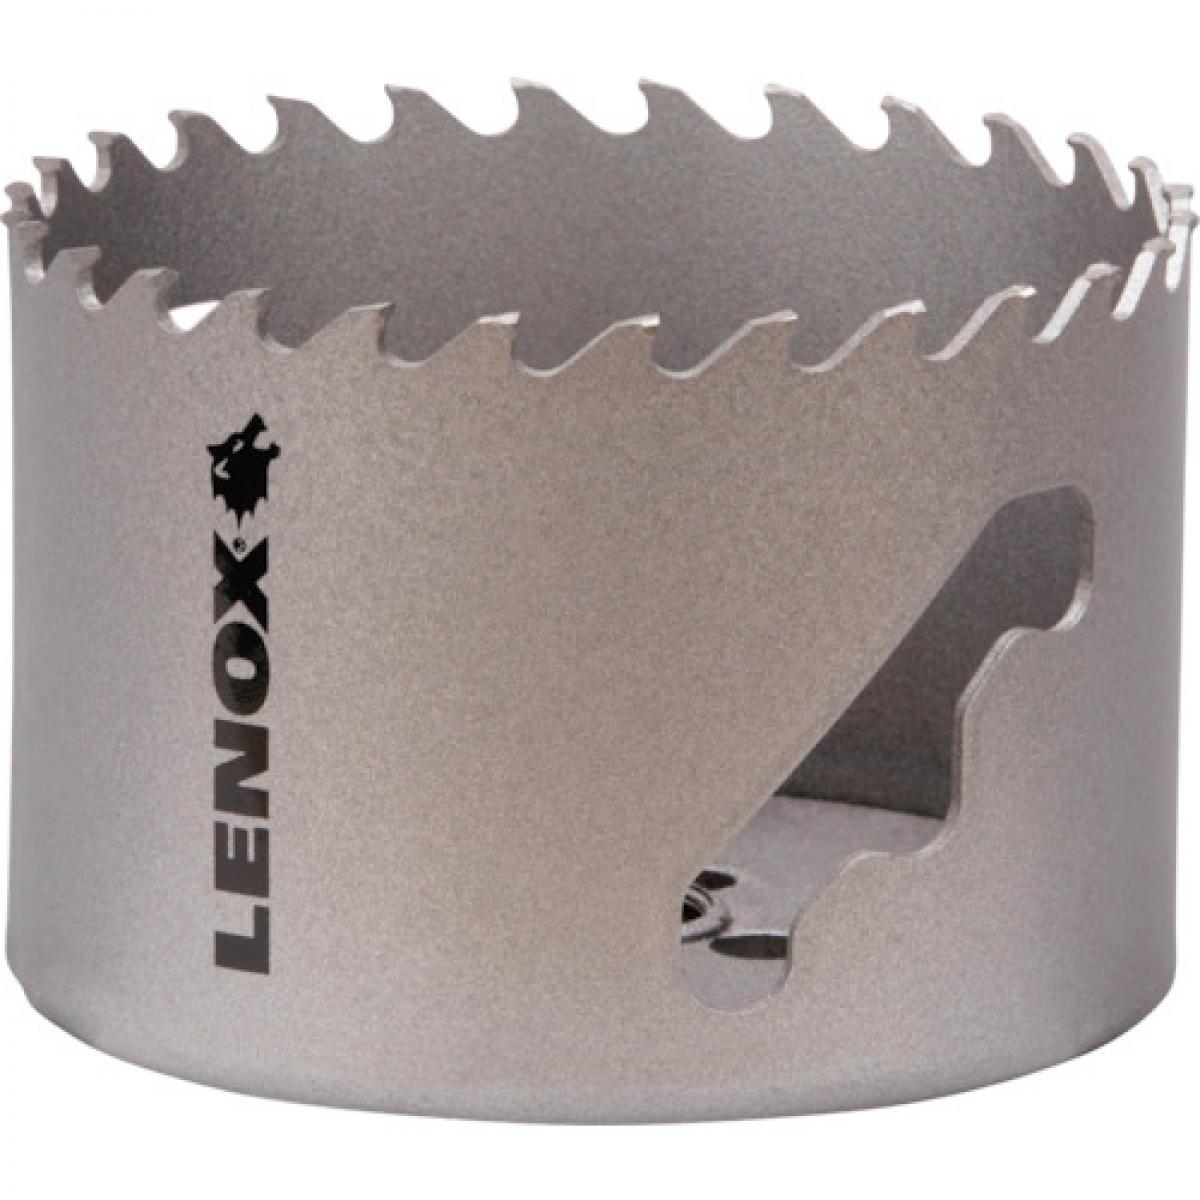 【高価値】 替刃 ホールソー 超硬チップ スピードスロット LENOX 76mm 工具 穴あけ 替え刃 レノックス LXAH3 電動工具用部品・アクセサリー